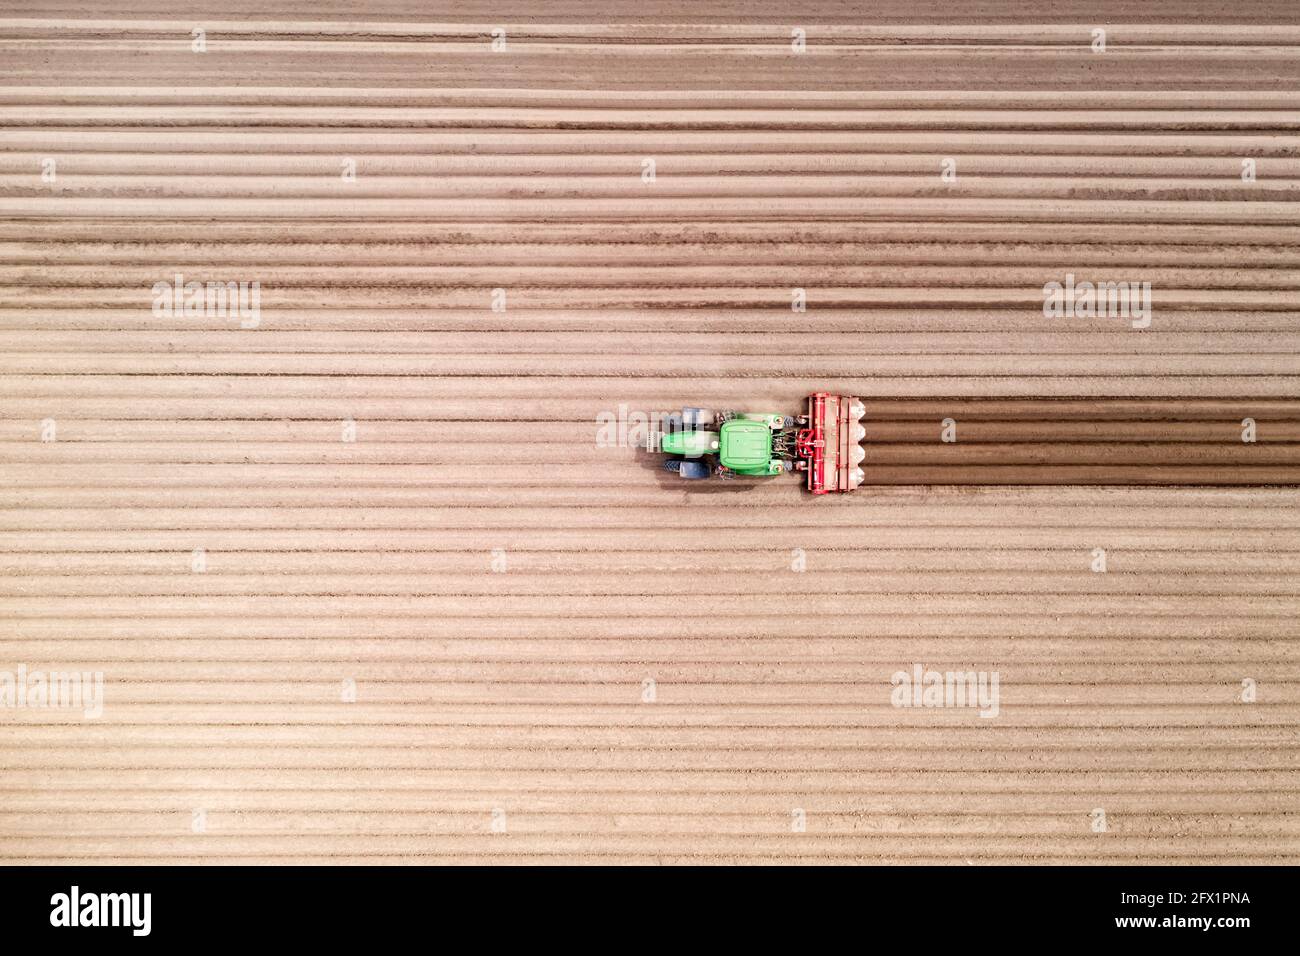 Einsamer Traktor auf landwirtschaftlichem Feld mit Reihen von gepflügten Böden. Landwirtschaftliche Felder für die Anpflanzung von Pflanzen vorbereitet, Ansicht von oben. Konzept der industriellen Landwirtschaft. Drohnenfotografie Stockfoto